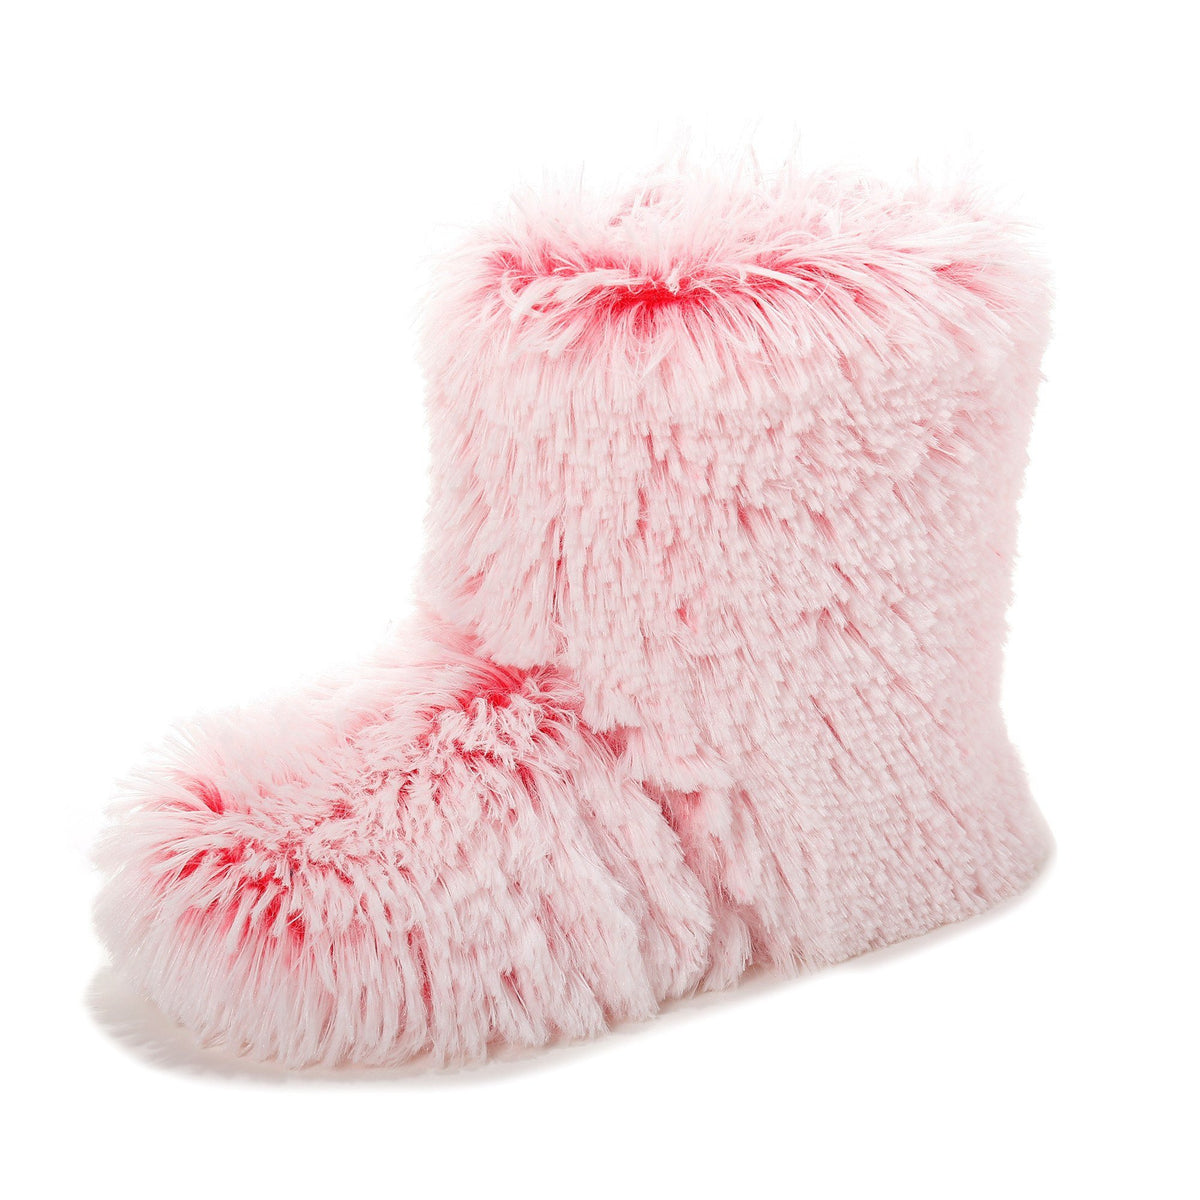 Women's Hi-Fashion Two Tone Faux Fur Boot Slipper - Pink Poodle